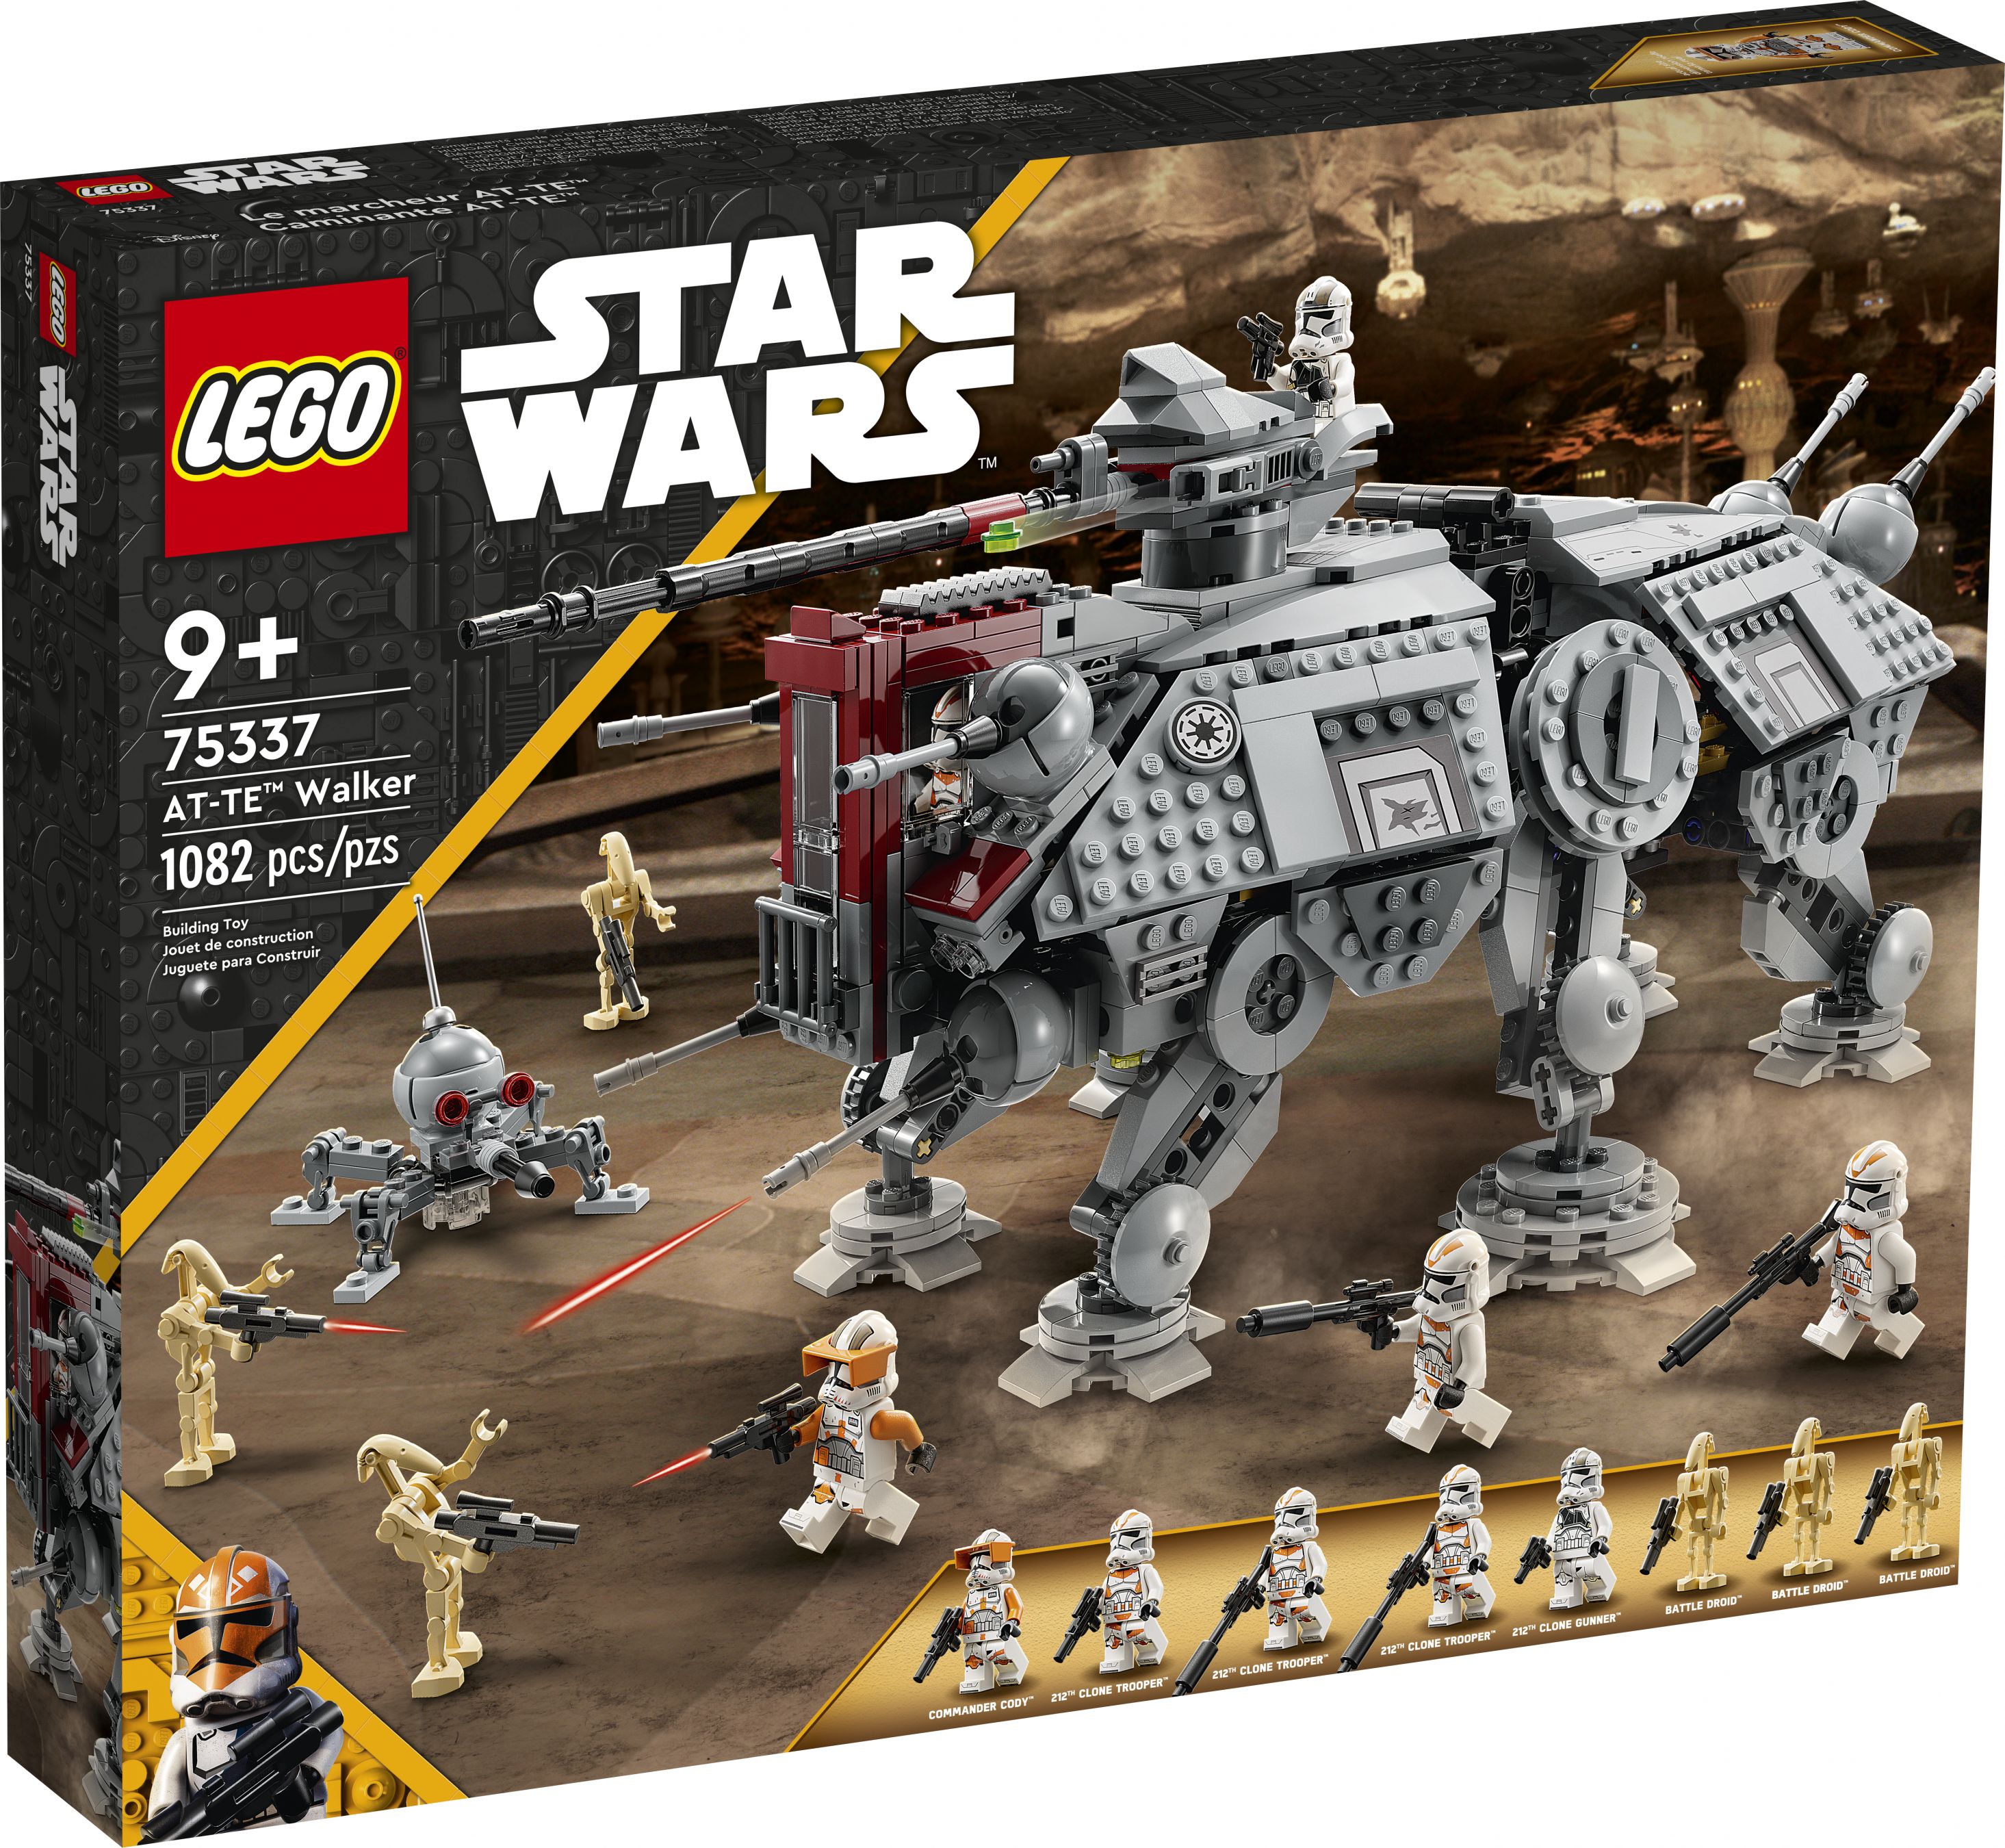 LEGO Star Wars 75337 AT-TE™ Walker LEGO_75337_Box1_v39.jpg